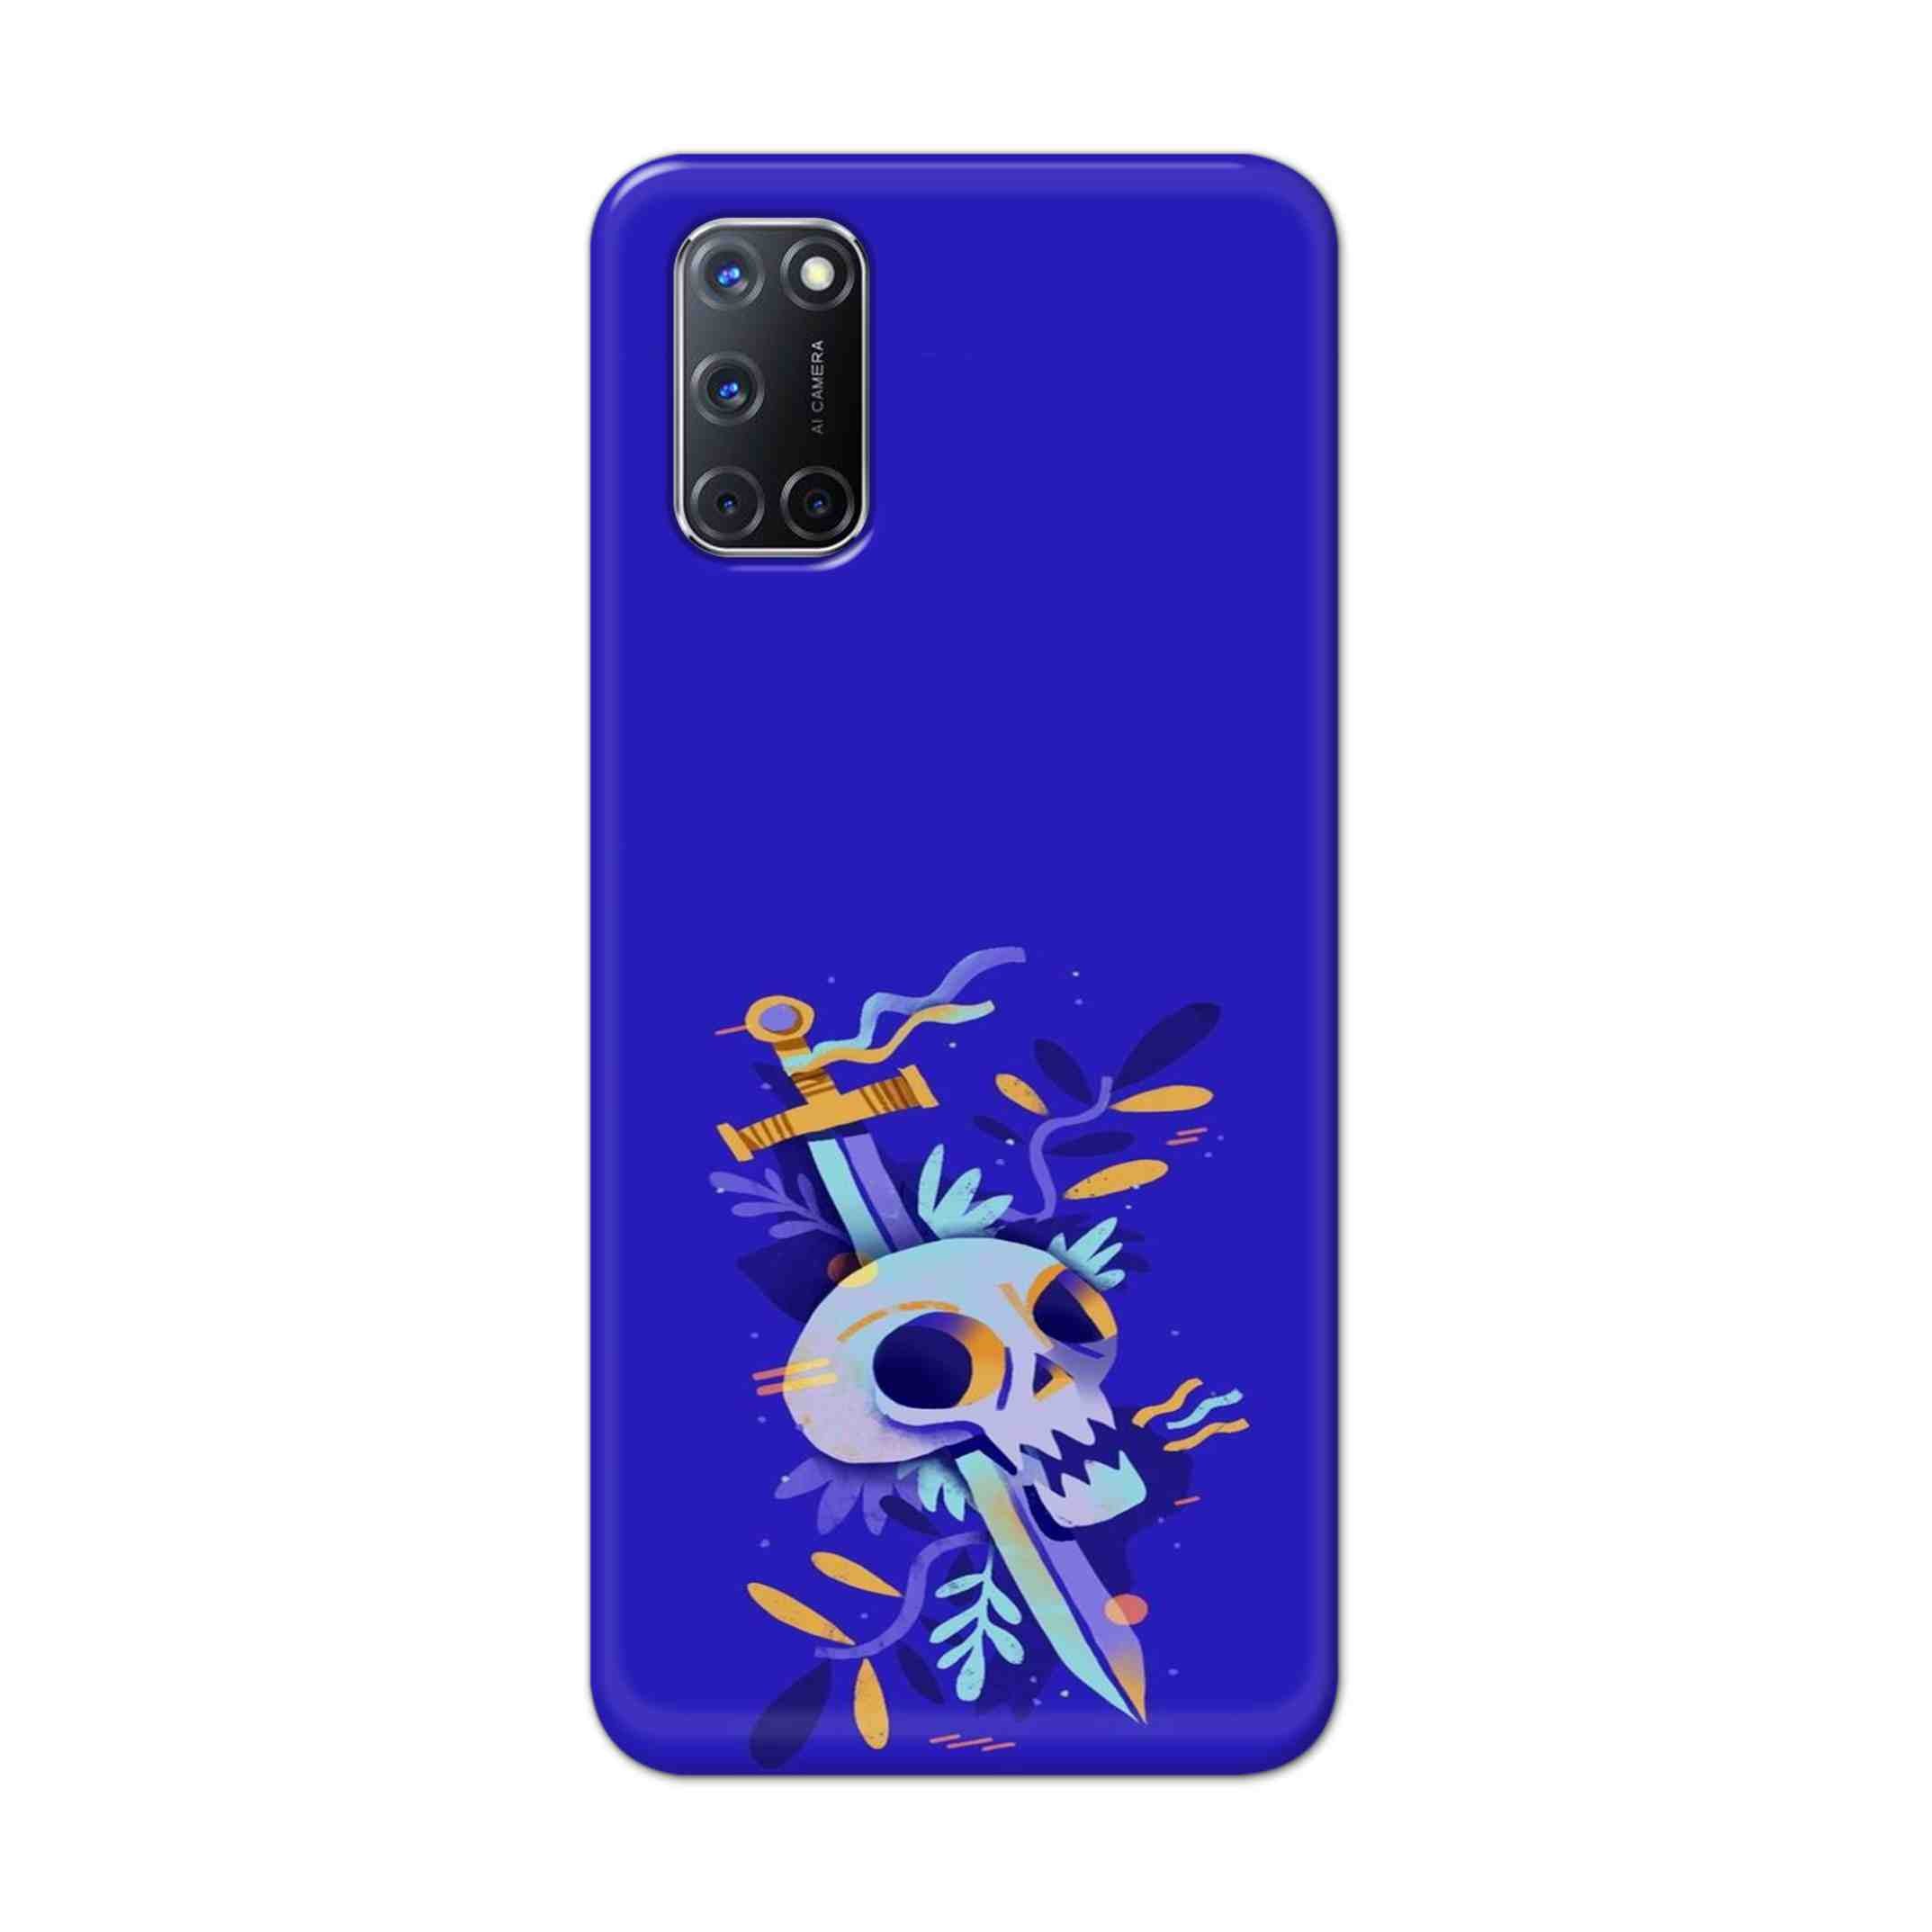 Buy Blue Skull Hard Back Mobile Phone Case Cover For Oppo A52 Online